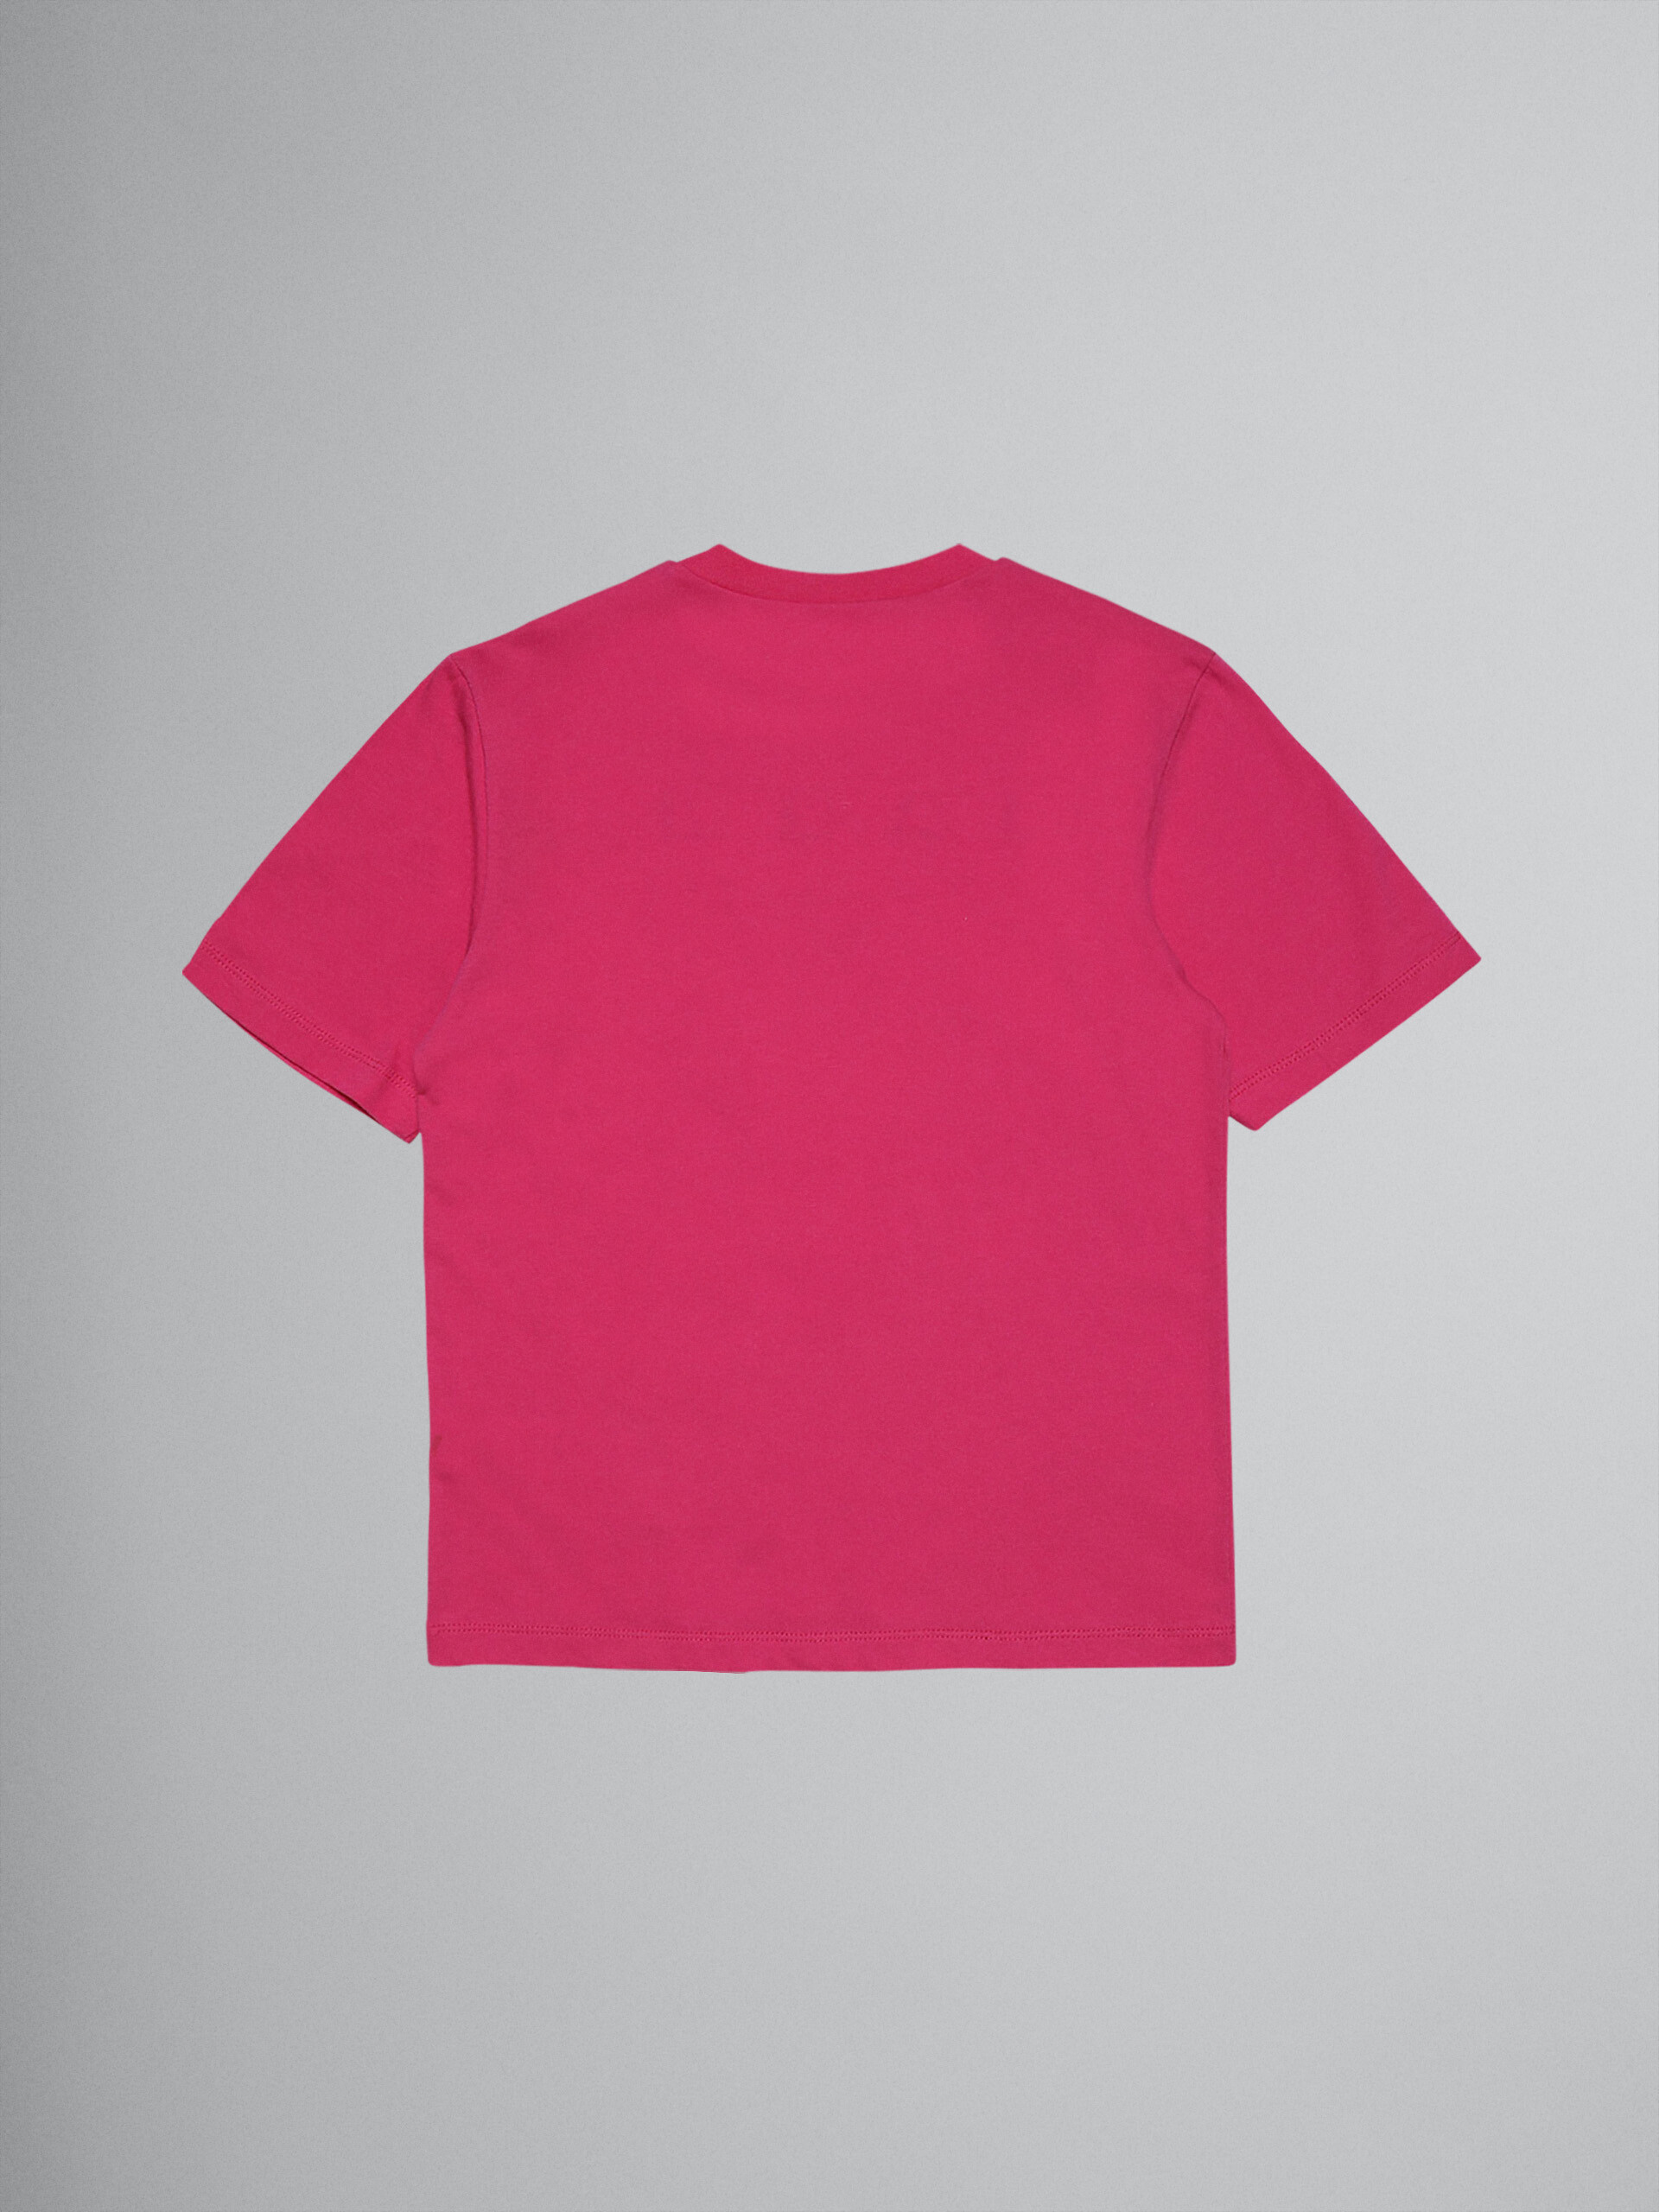 T-Shirt aus pinkfarbenem Baumwolljersey mit Logo - T-shirts - Image 2